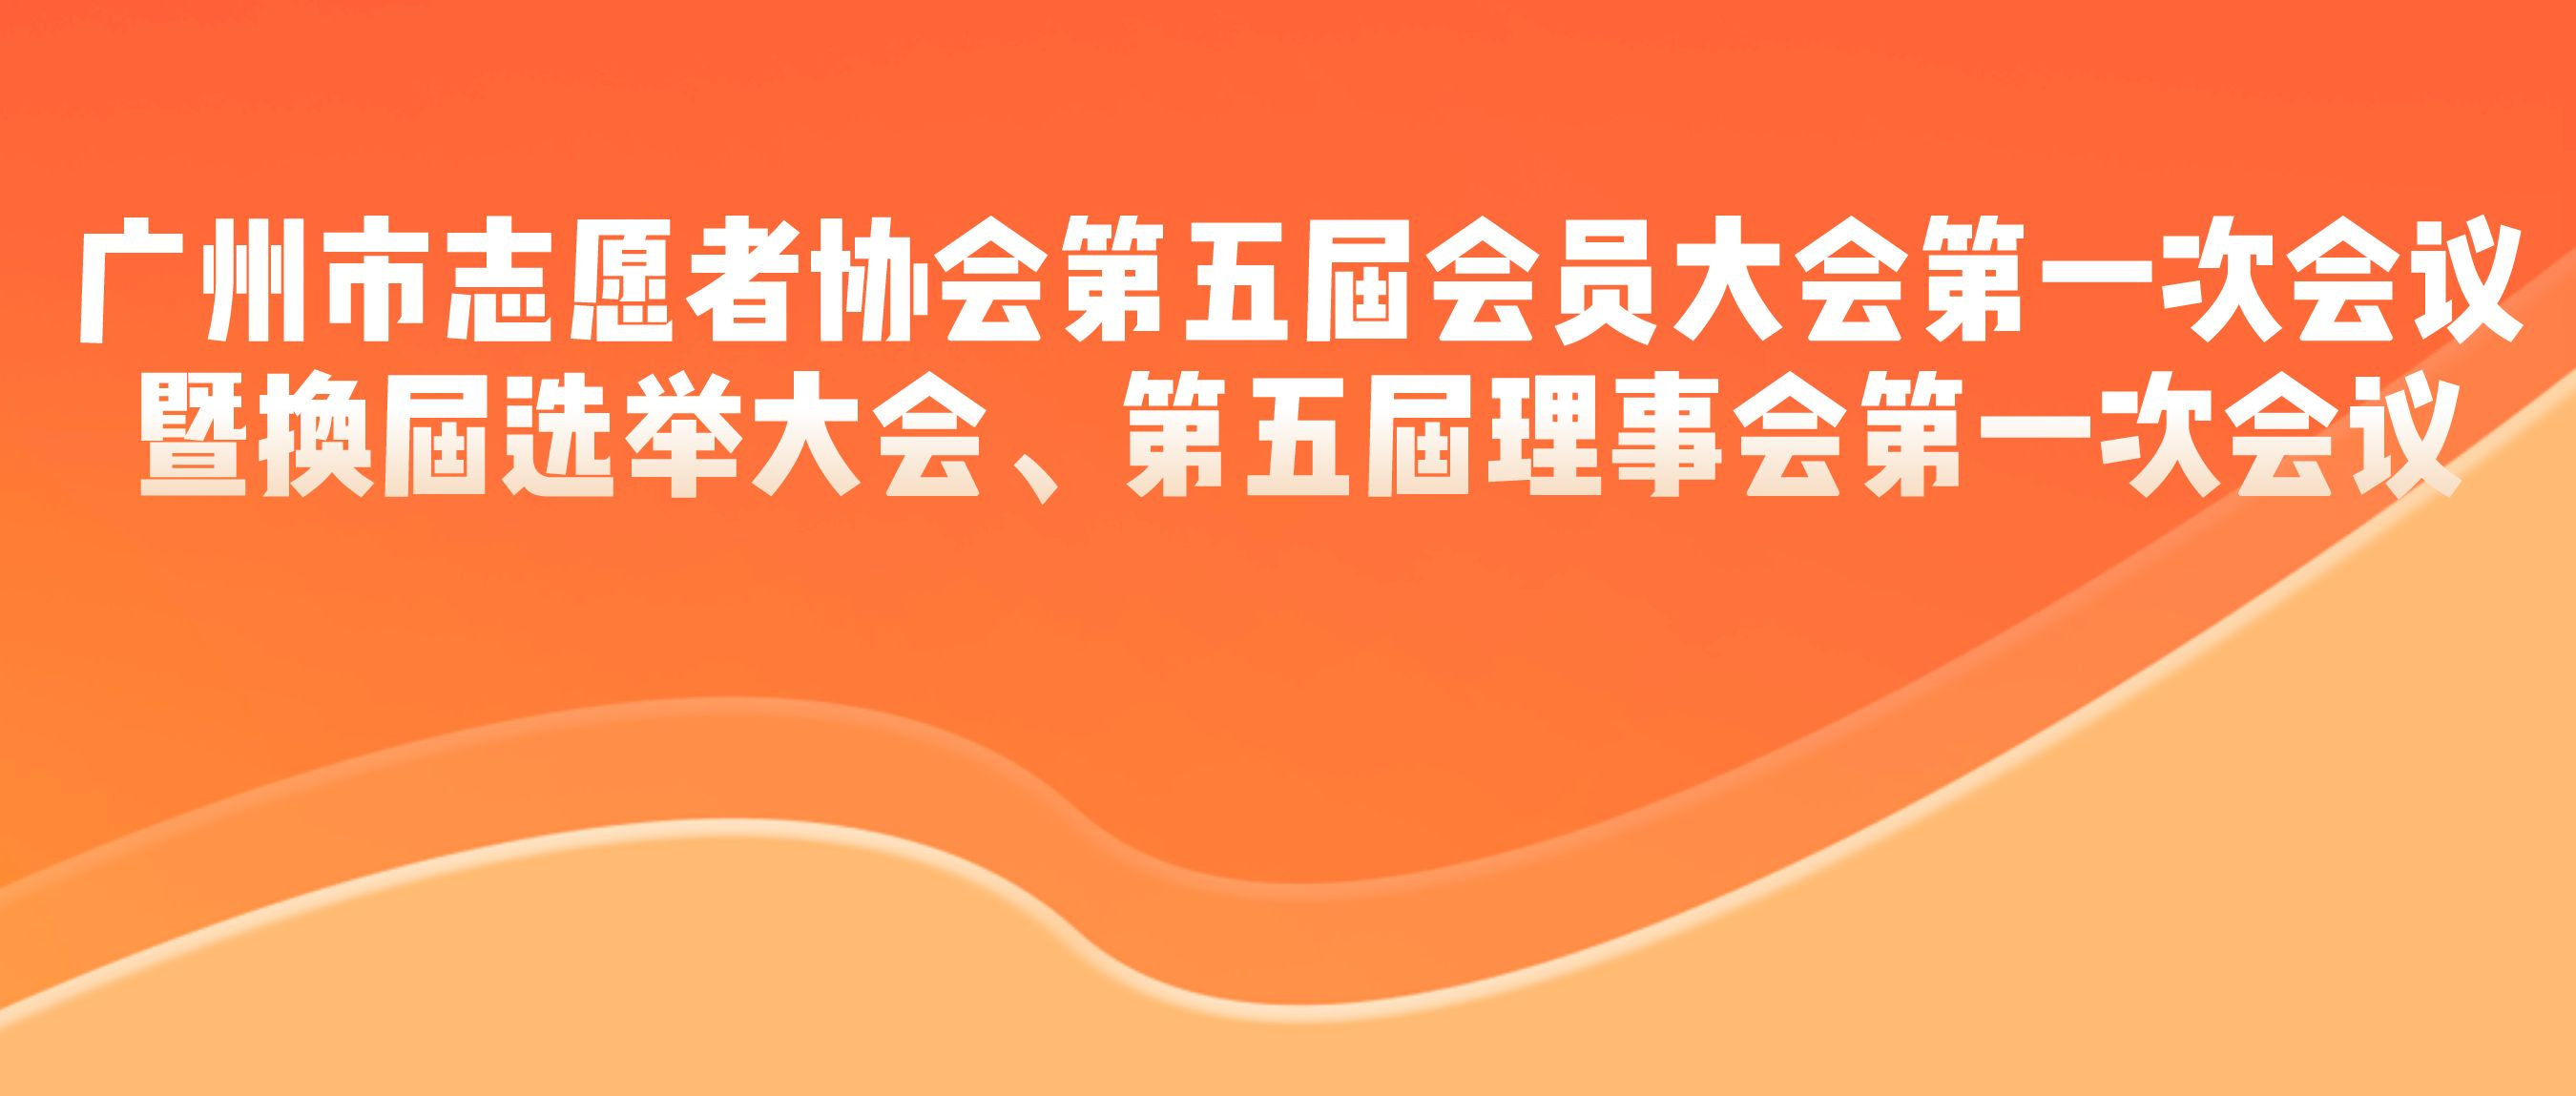 广州市志愿者协会第五届会员大会第一次会议暨换届选举大会、第五届理事会第一次会议